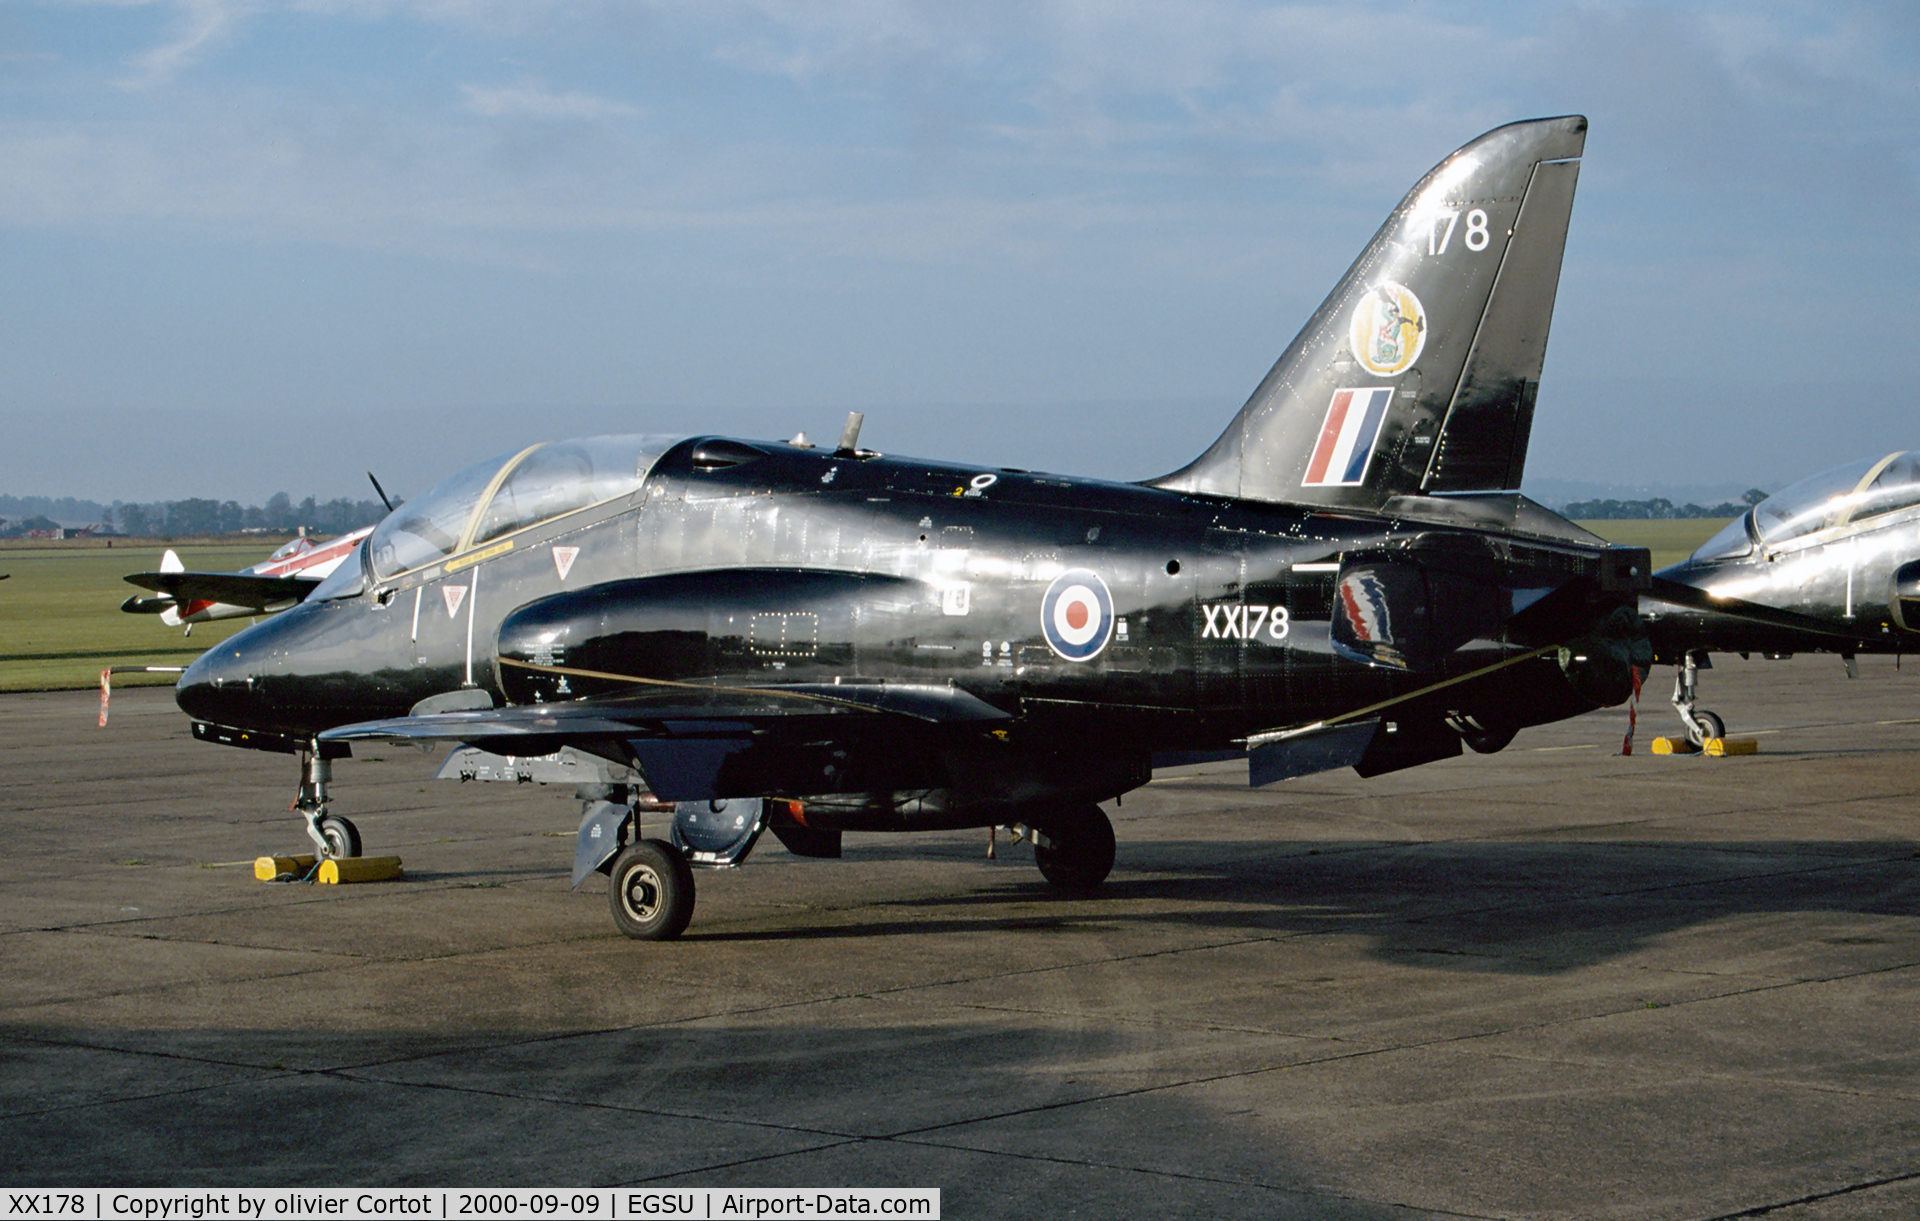 XX178, 1977 Hawker Siddeley Hawk T.1W C/N 025/312025, Duxford autumn airshow